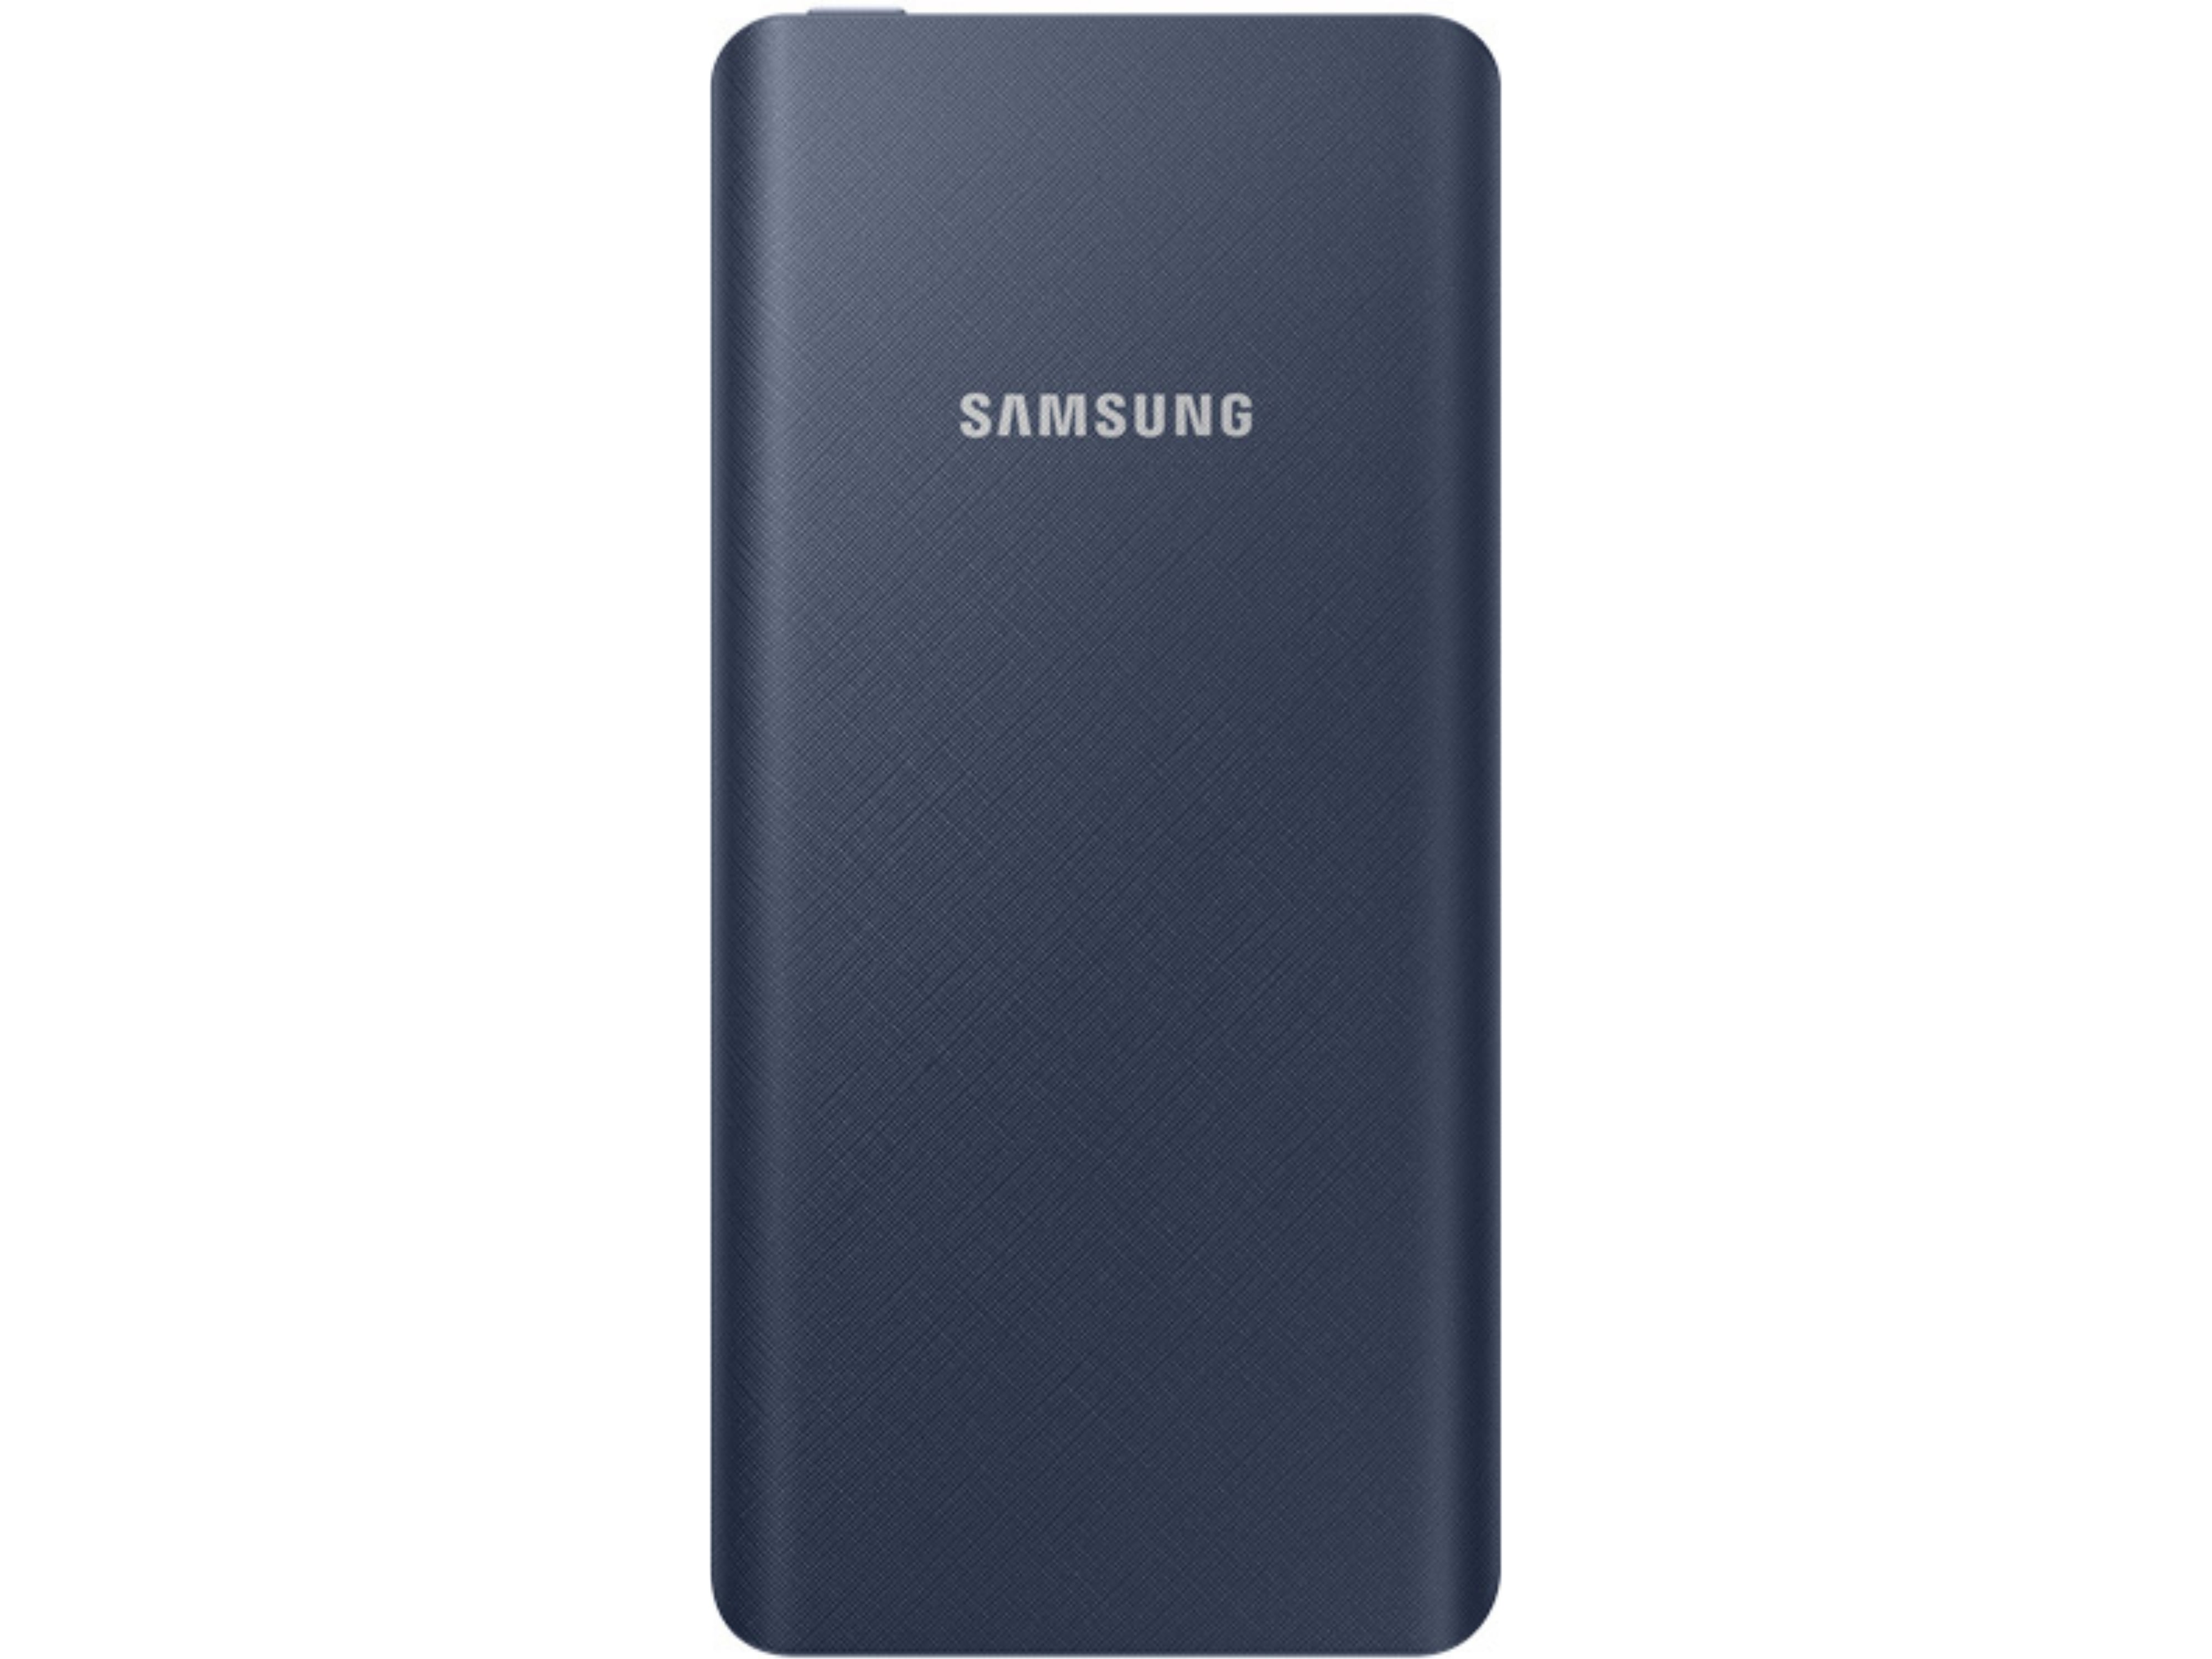 Внешний аккумулятор 5000 mAh Samsung EB-P3020  (Синий)